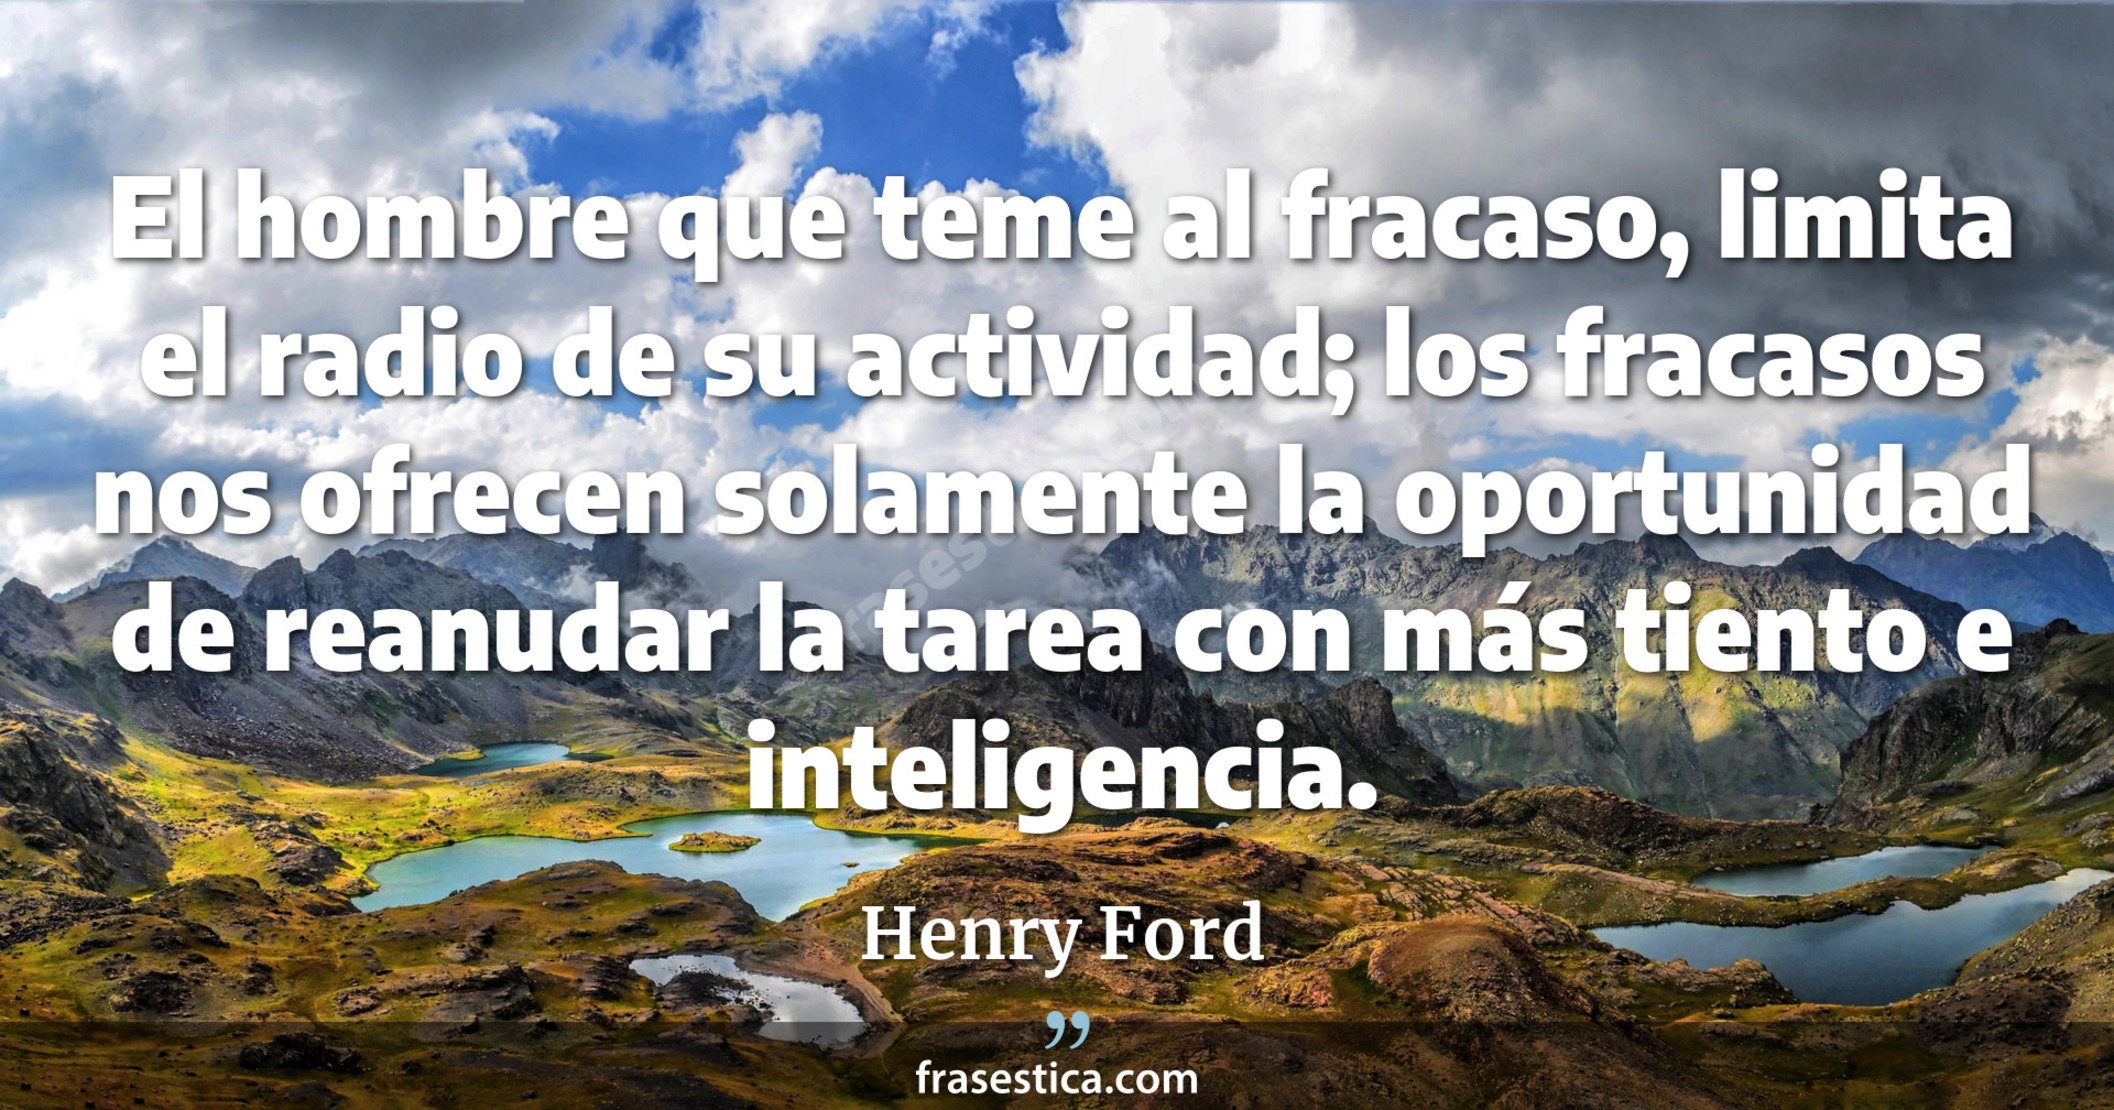 El hombre que teme al fracaso, limita el radio de su actividad; los fracasos nos ofrecen solamente la oportunidad de reanudar la tarea con más tiento e inteligencia. - Henry Ford